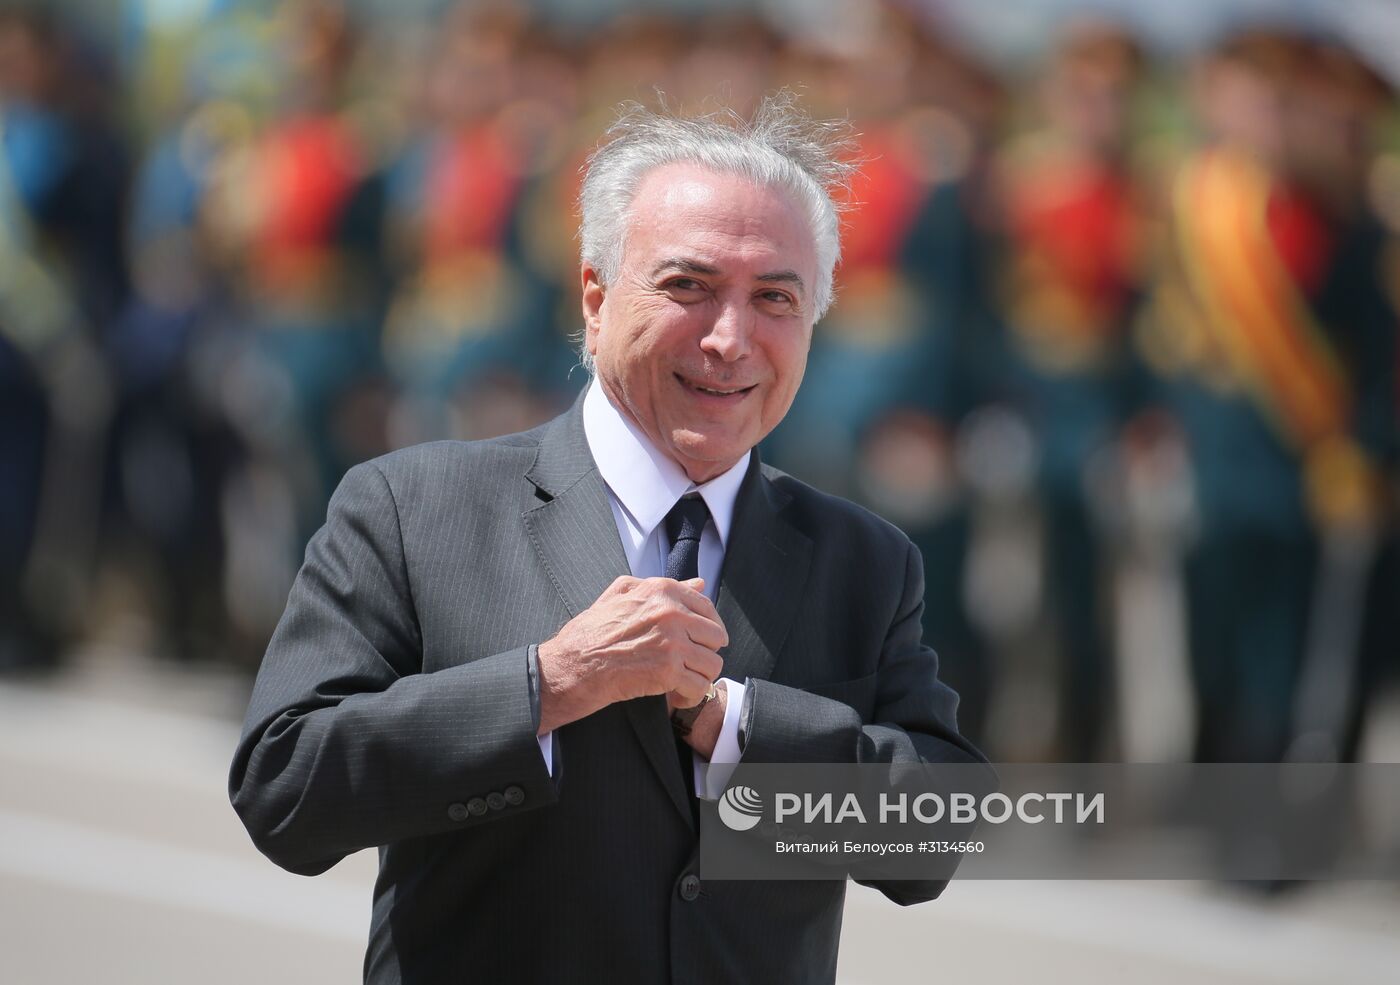 Прилет президента Республики Бразилия М. Темера в Москву